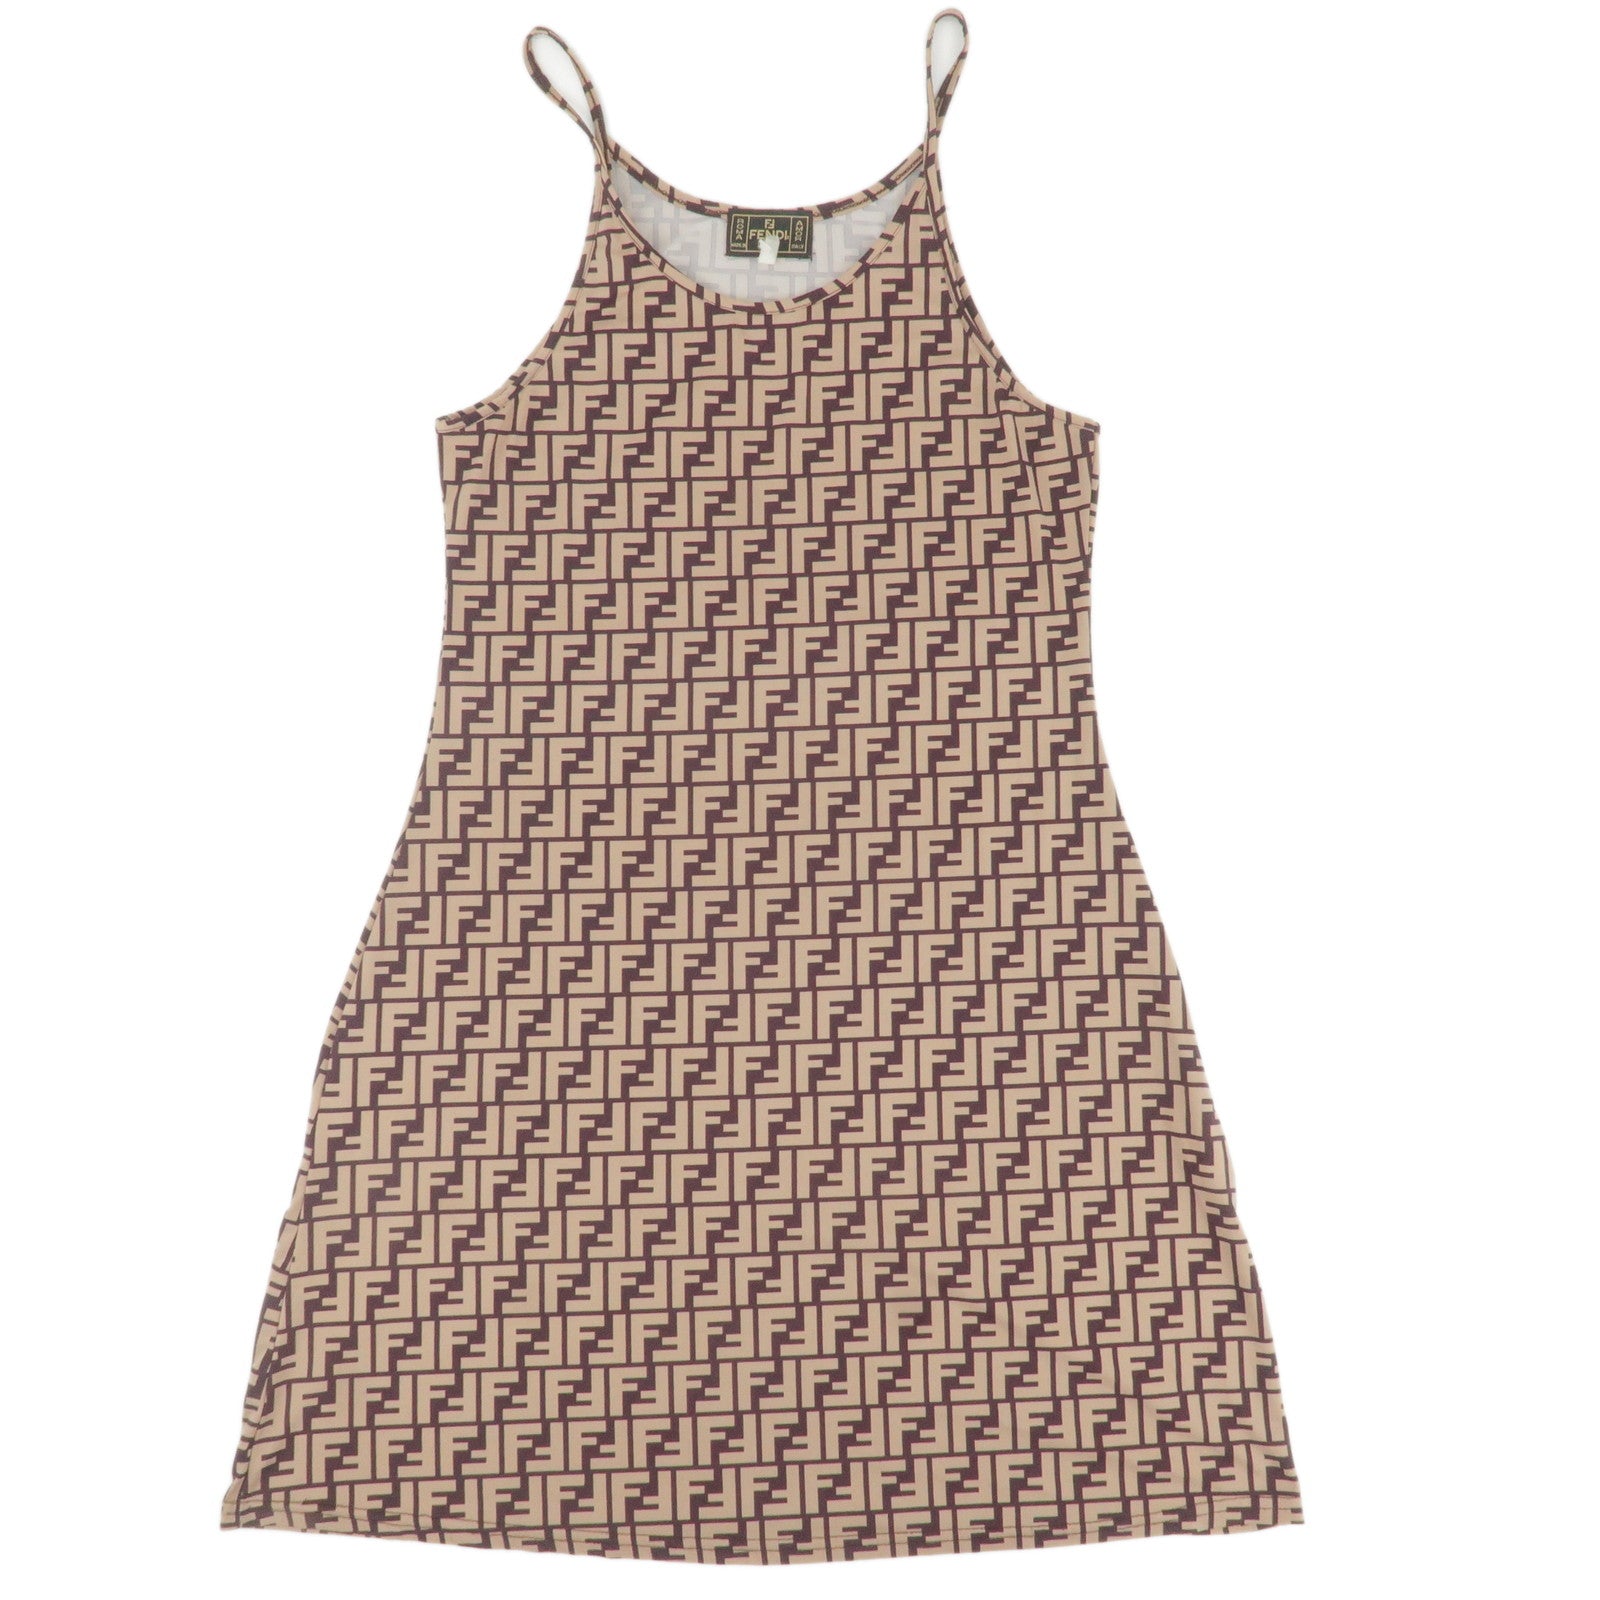 FENDI-Zucca-Dress-Cotton-Spandex-Size-38-Beige-Brown